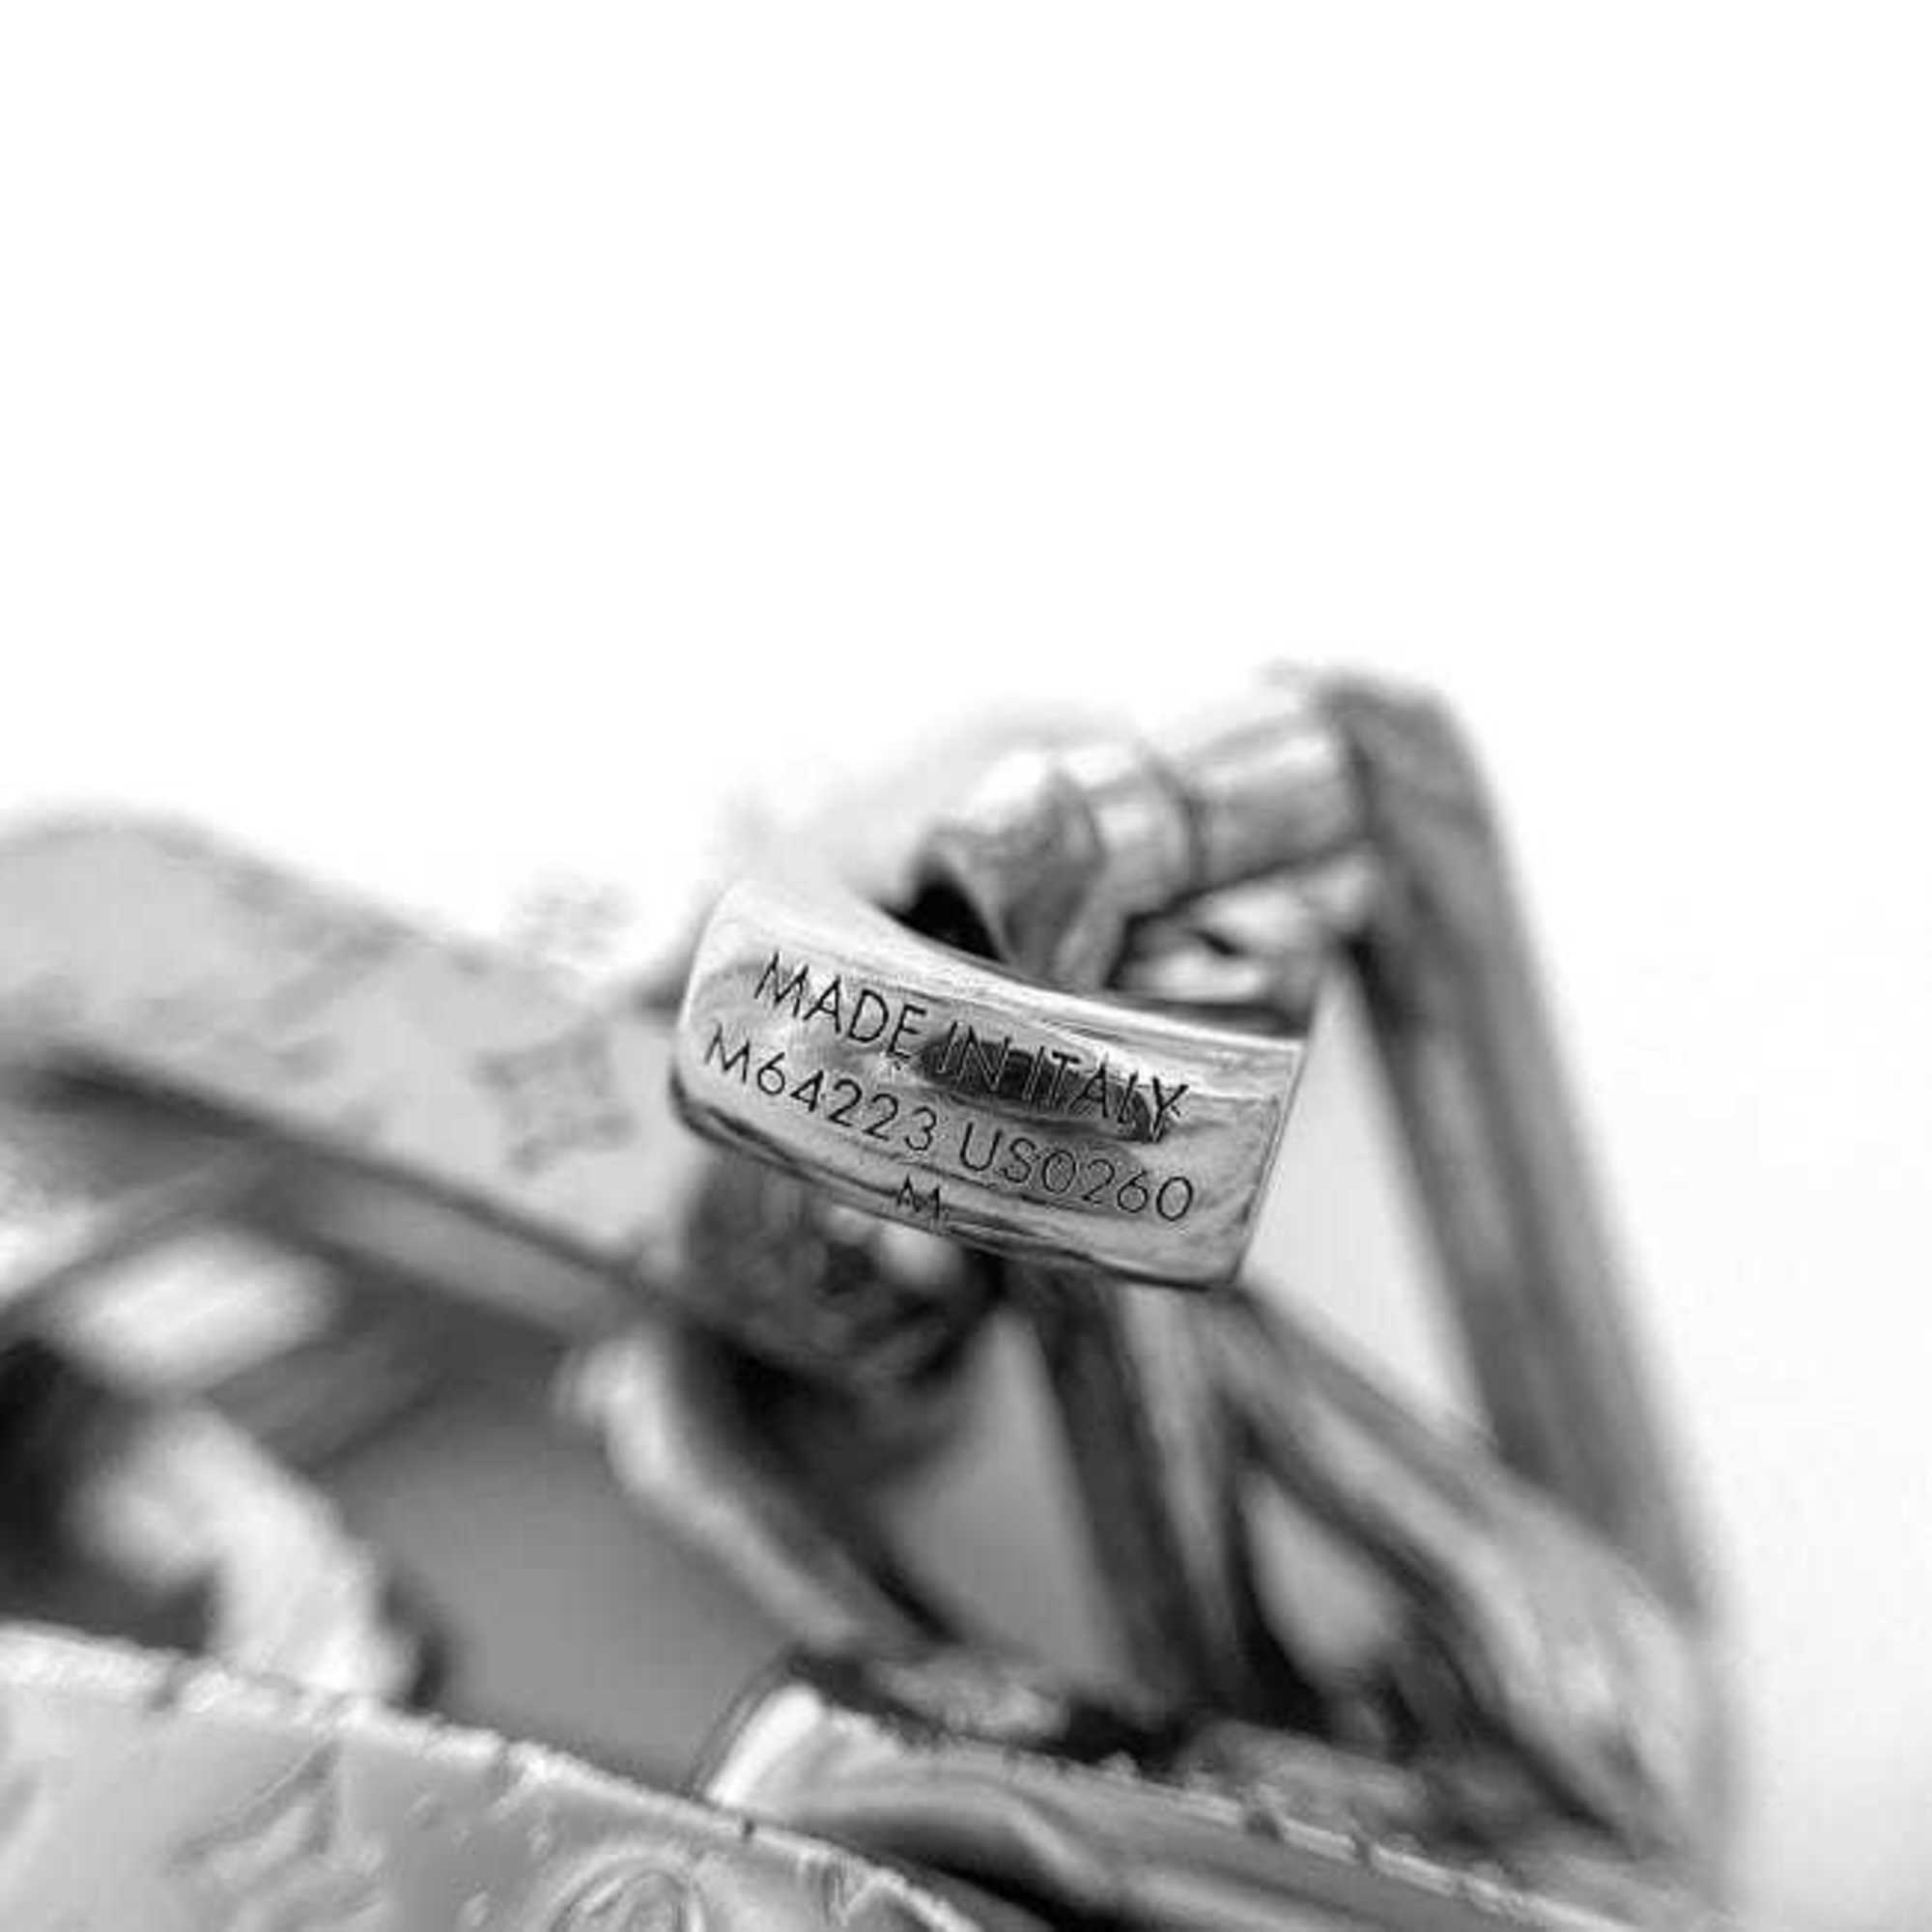 Louis Vuitton Bracelet Collier Chain Silver M64223 f-19906 Metal M Size US0260 LOUIS VUITTON Men's Women's